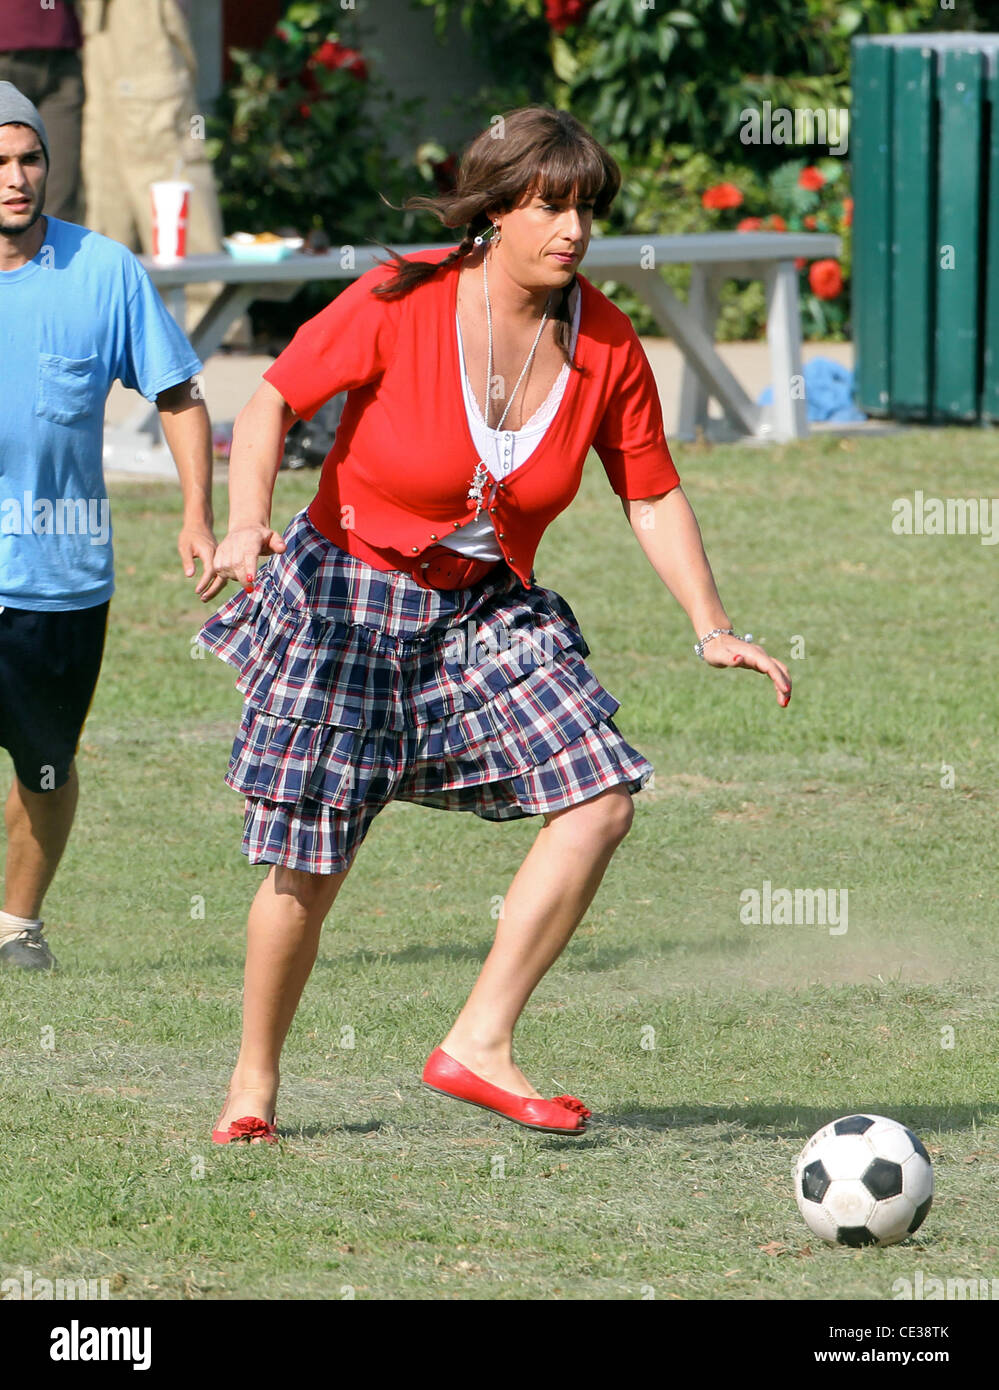 Adam Sandler spielt Fußball gekleidet wie eine Frau in einer roten Jacke  und Rock, auf dem Film Standort für den Spielfilm "Jack and Jill" in einem  Park in Hollywood. Los Angeles, Kalifornien -